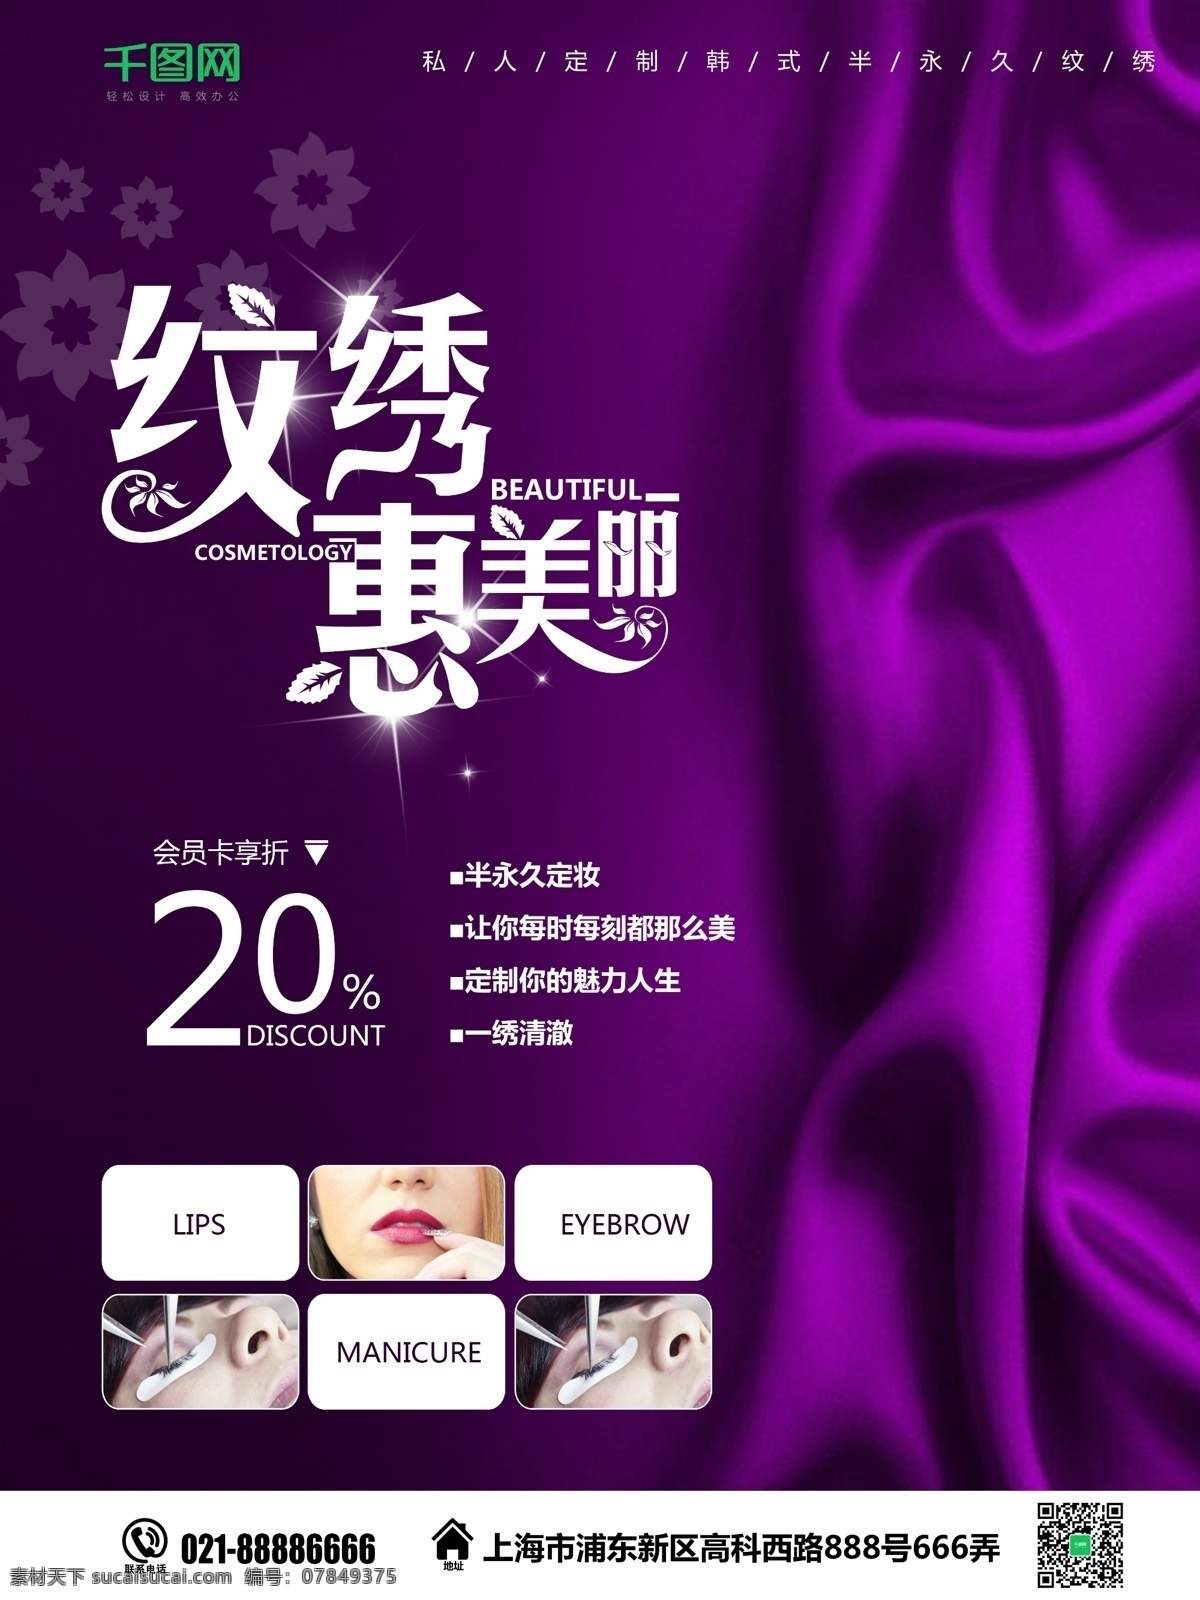 紫色 简约 纹绣 惠美 丽 美容 促销 海报 会员卡 丝绸 美容院 纹眉 大气 韩式半永久妆 纹唇